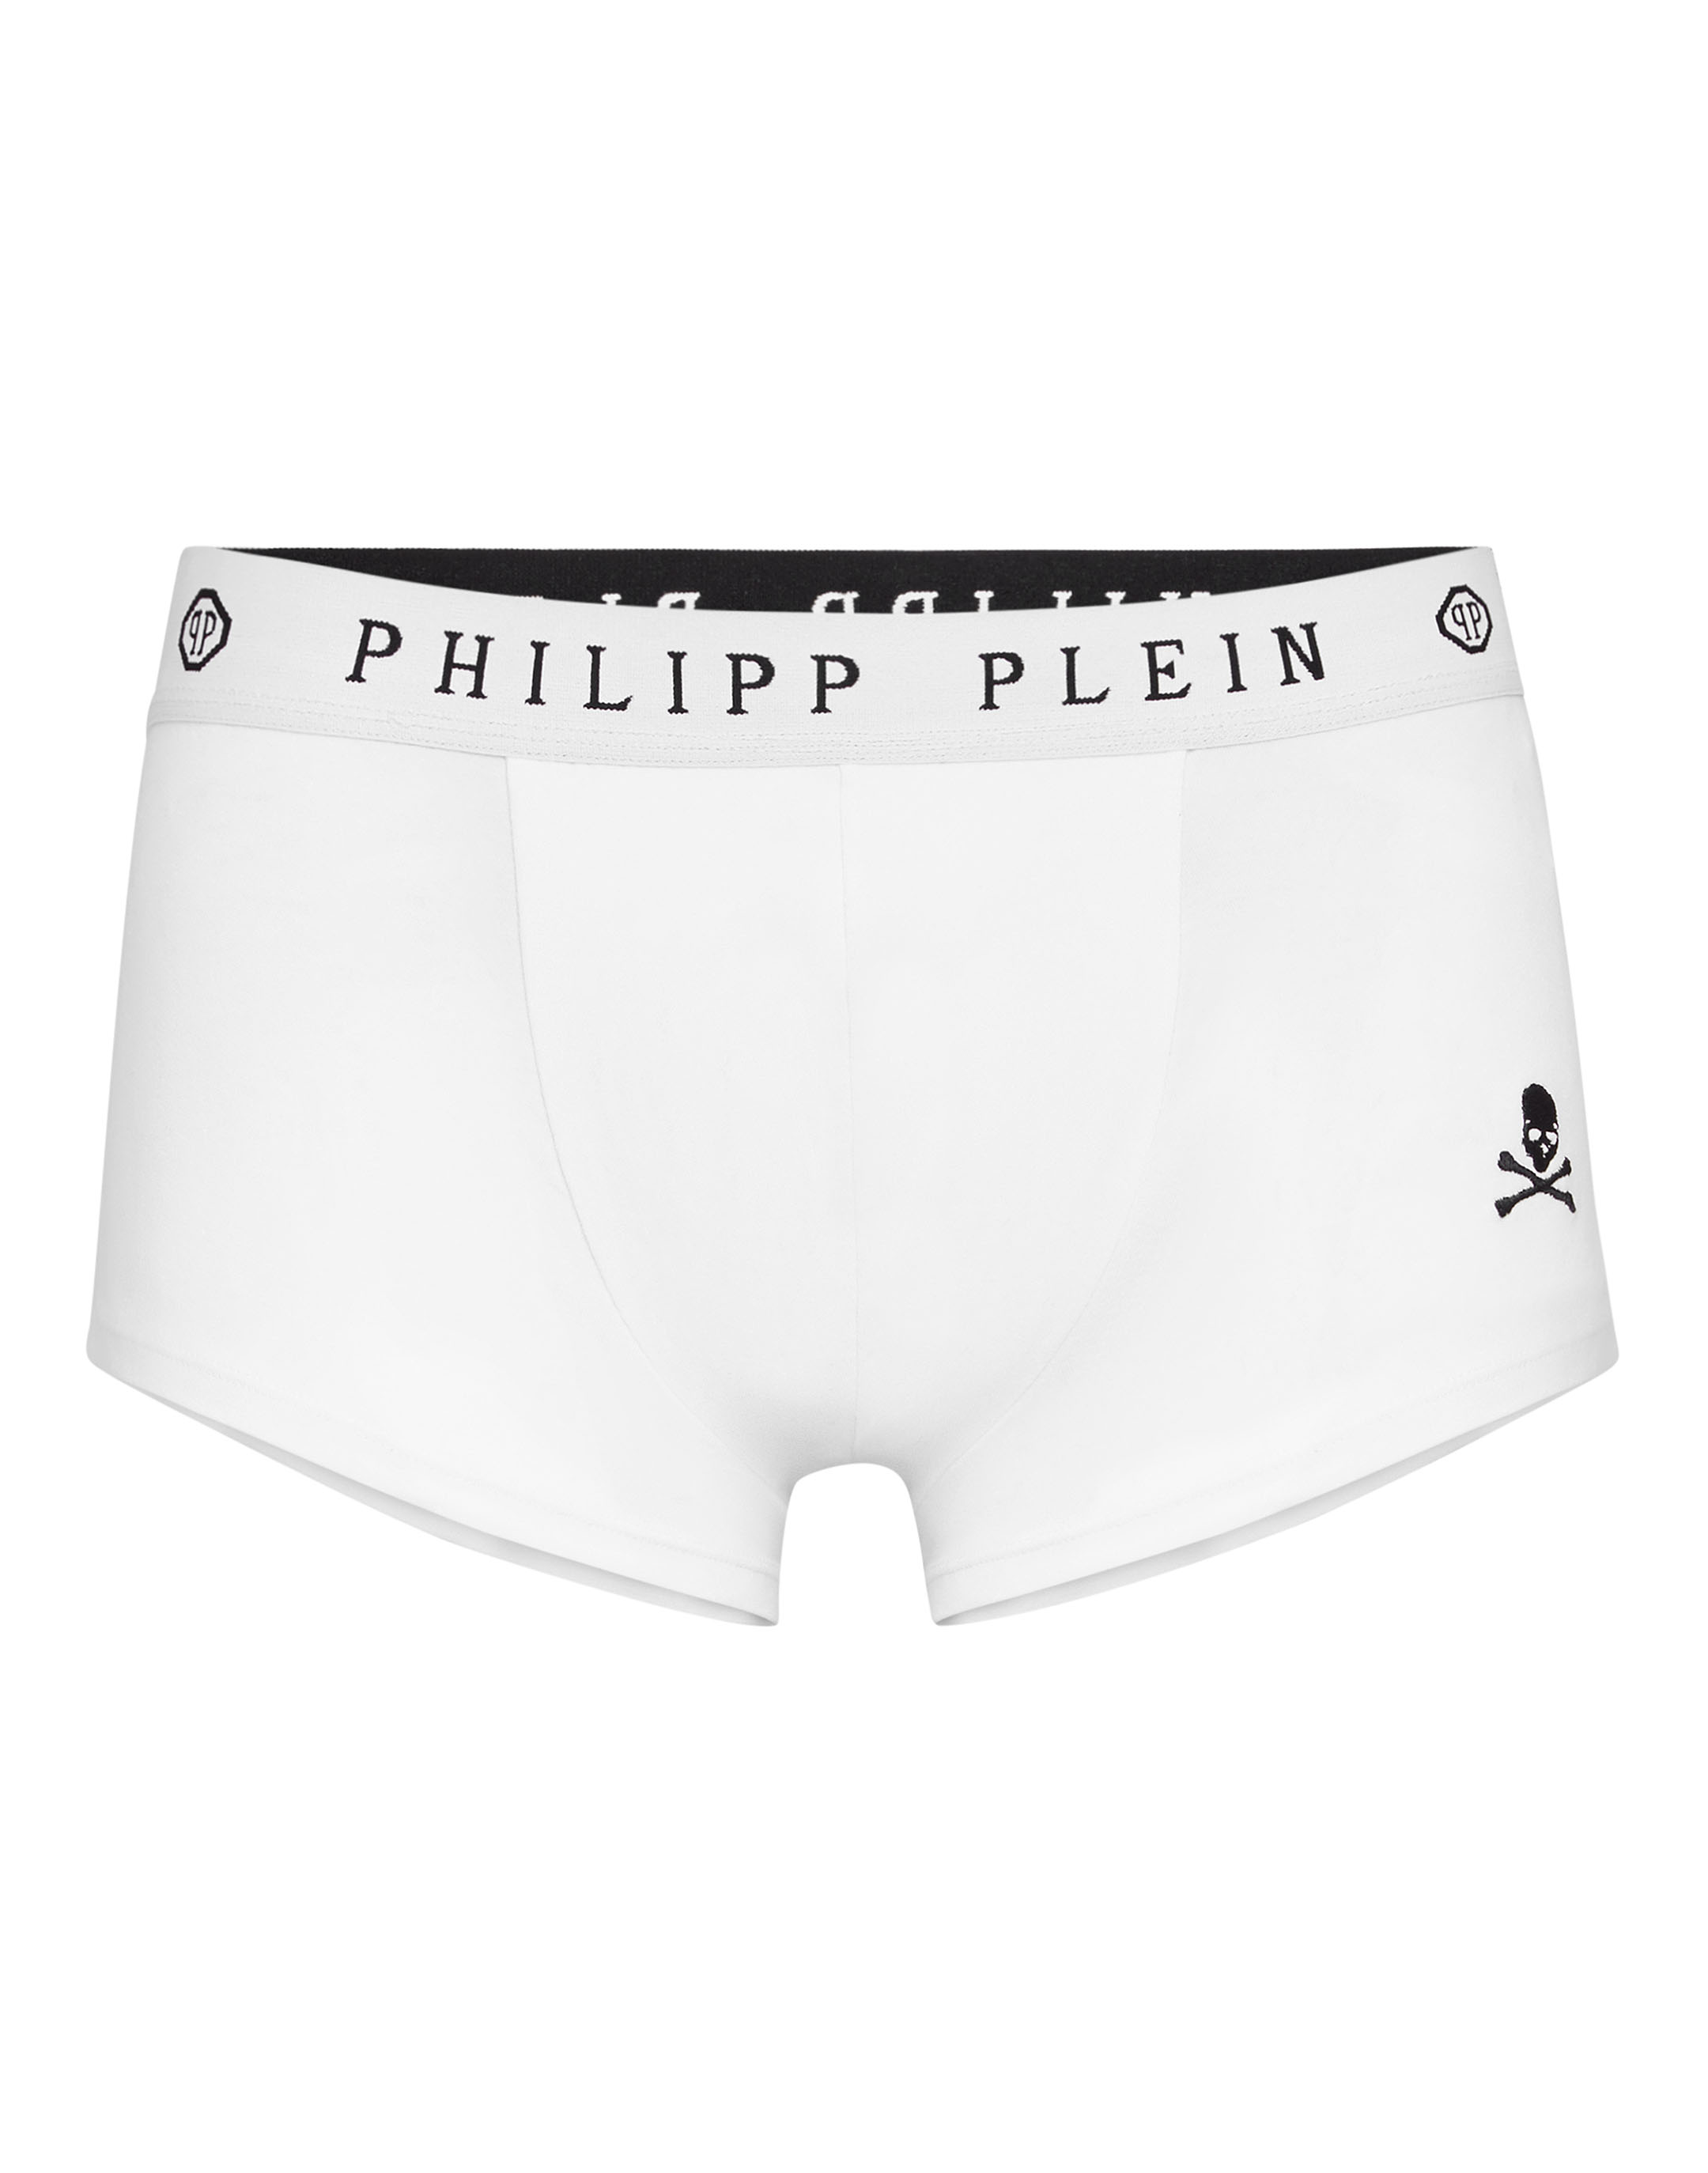 philipp plein boxer shorts